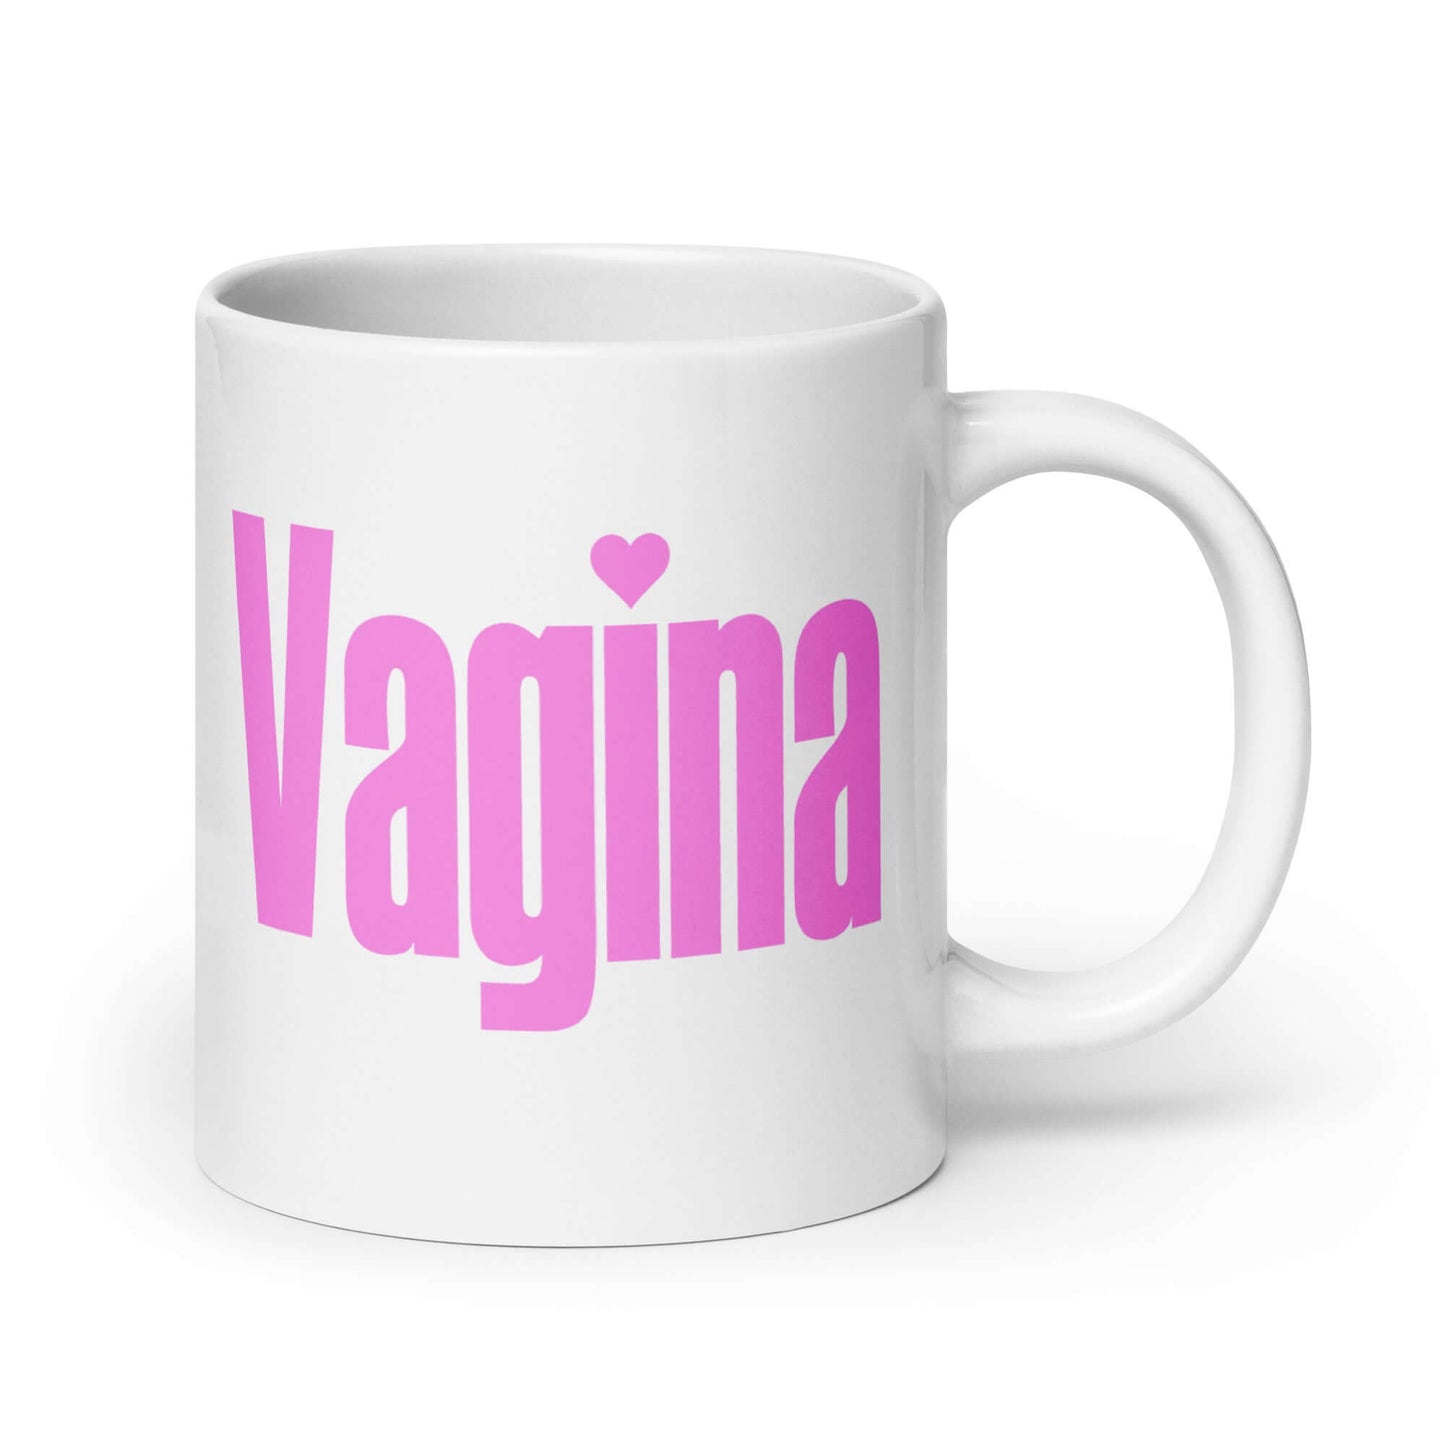 Vagina coffee mug